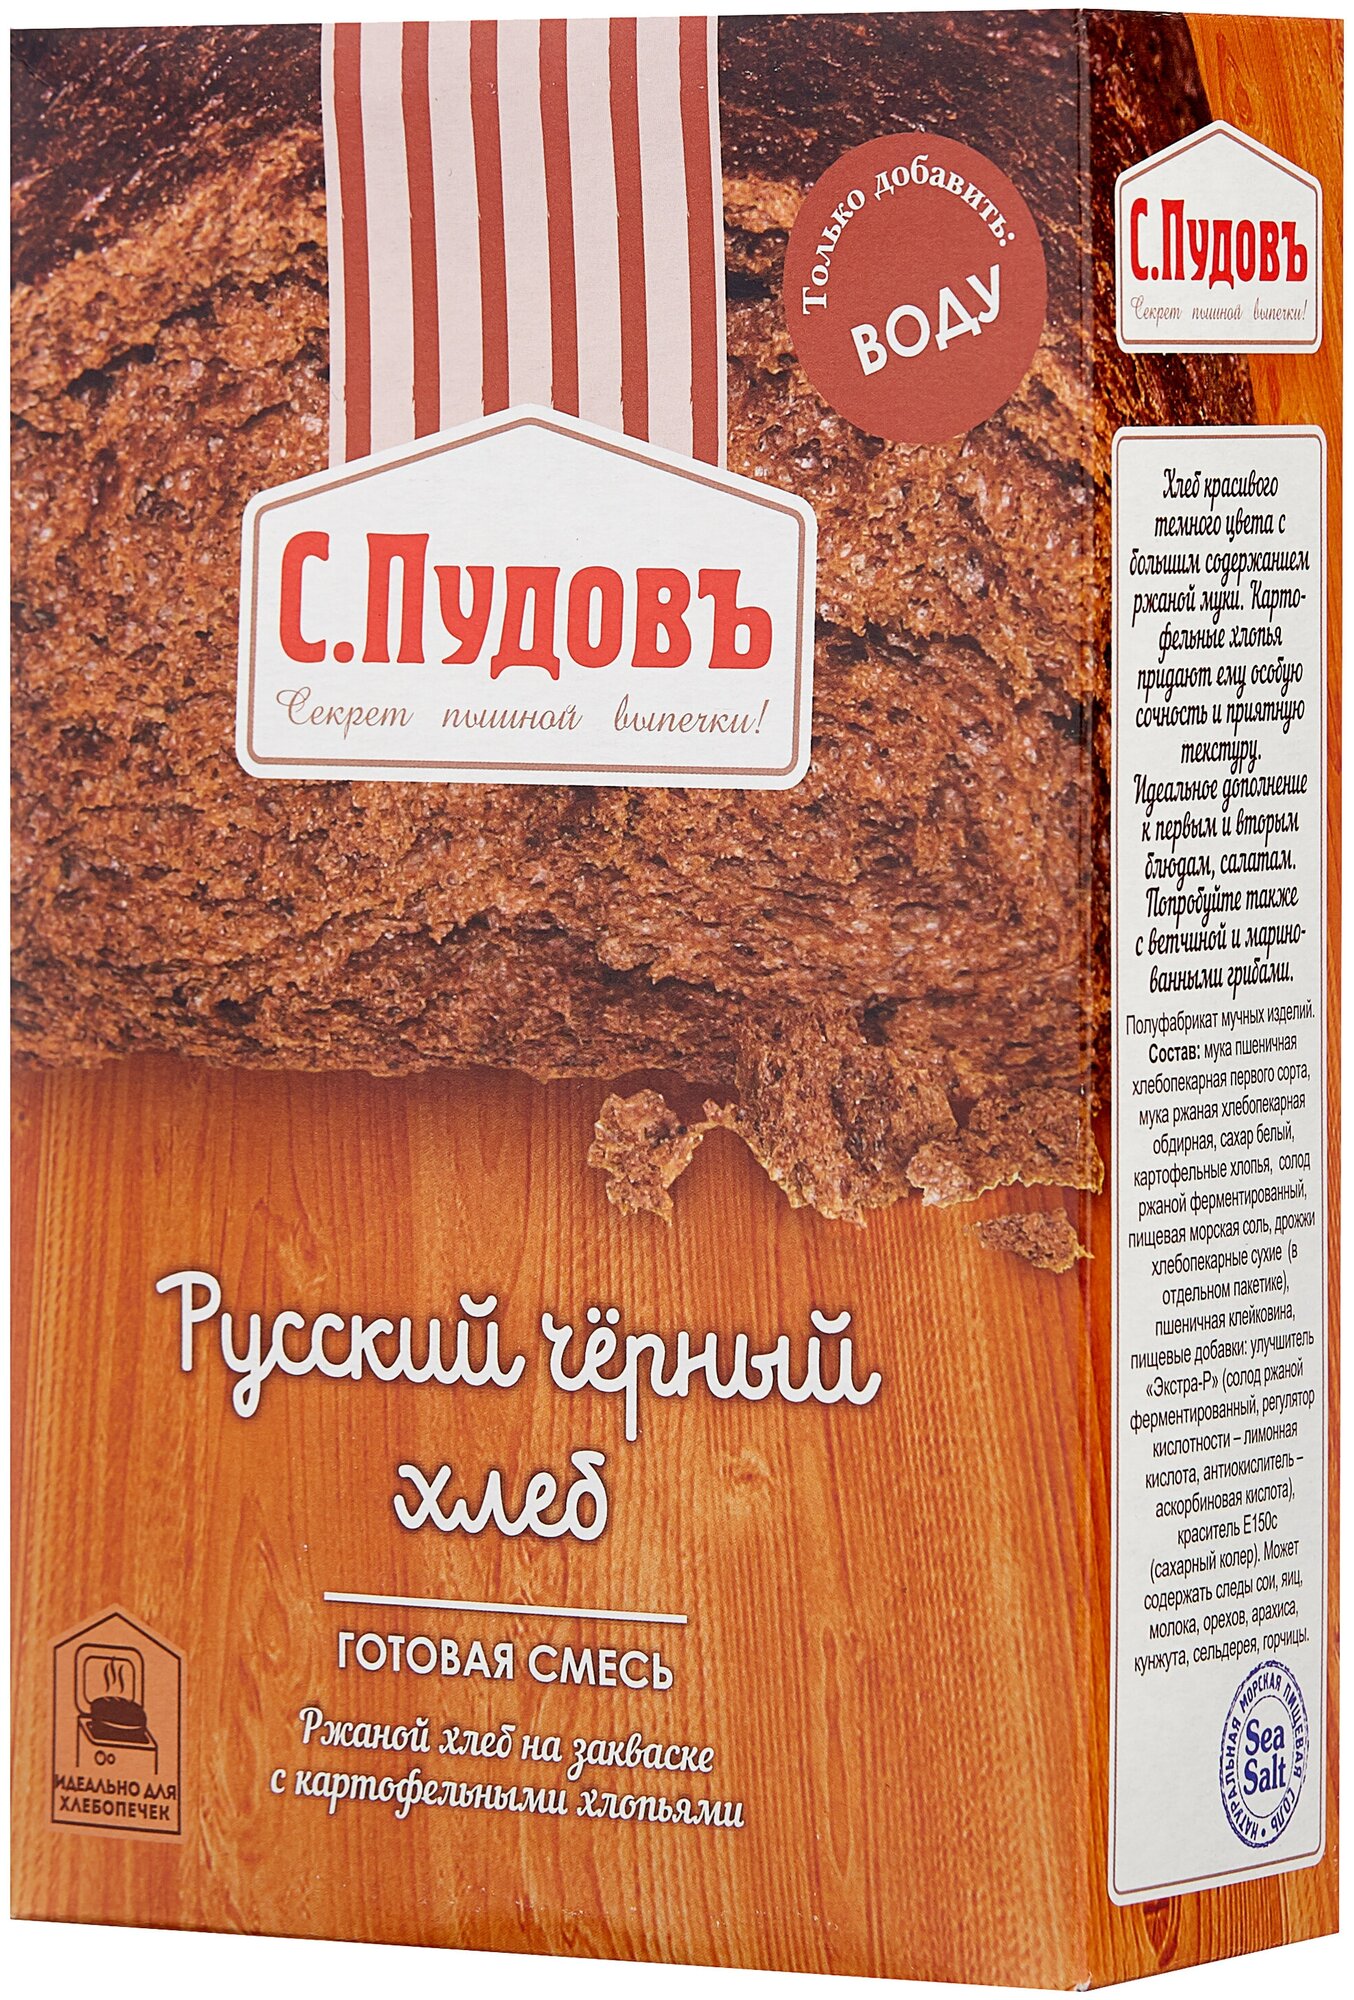 Смесь для выпечки хлеба Русский черный хлеб 500 гр.